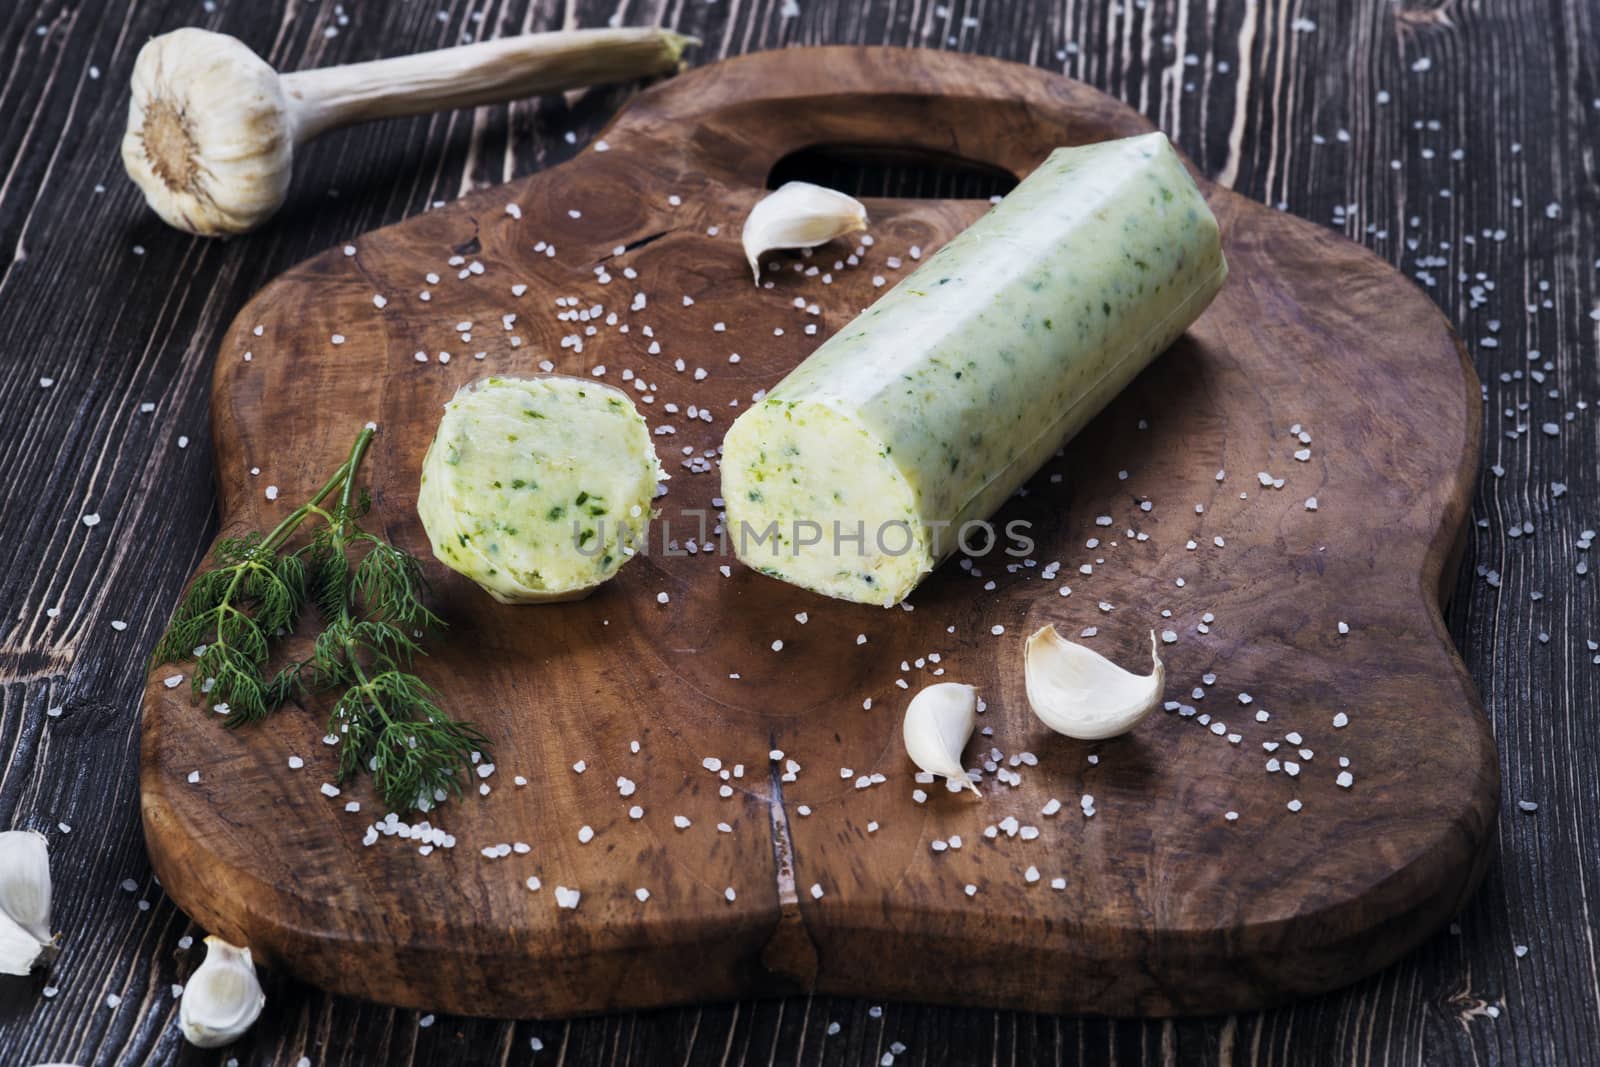 Lard with salt, garlic and herbs by kzen